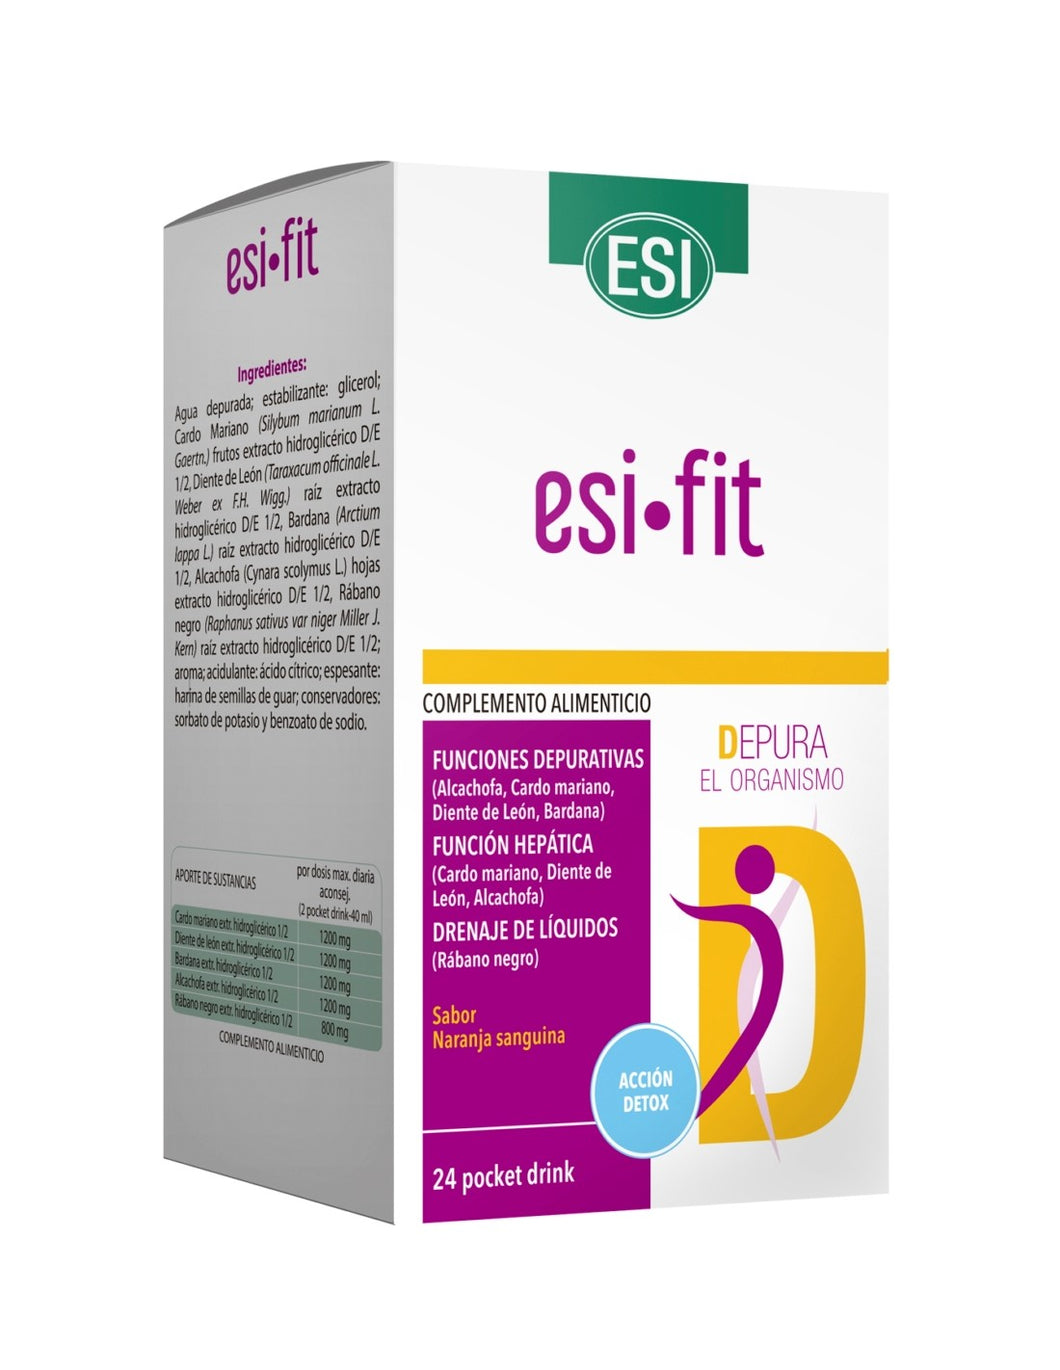 ESI-fit depura pocket (24 sobres)